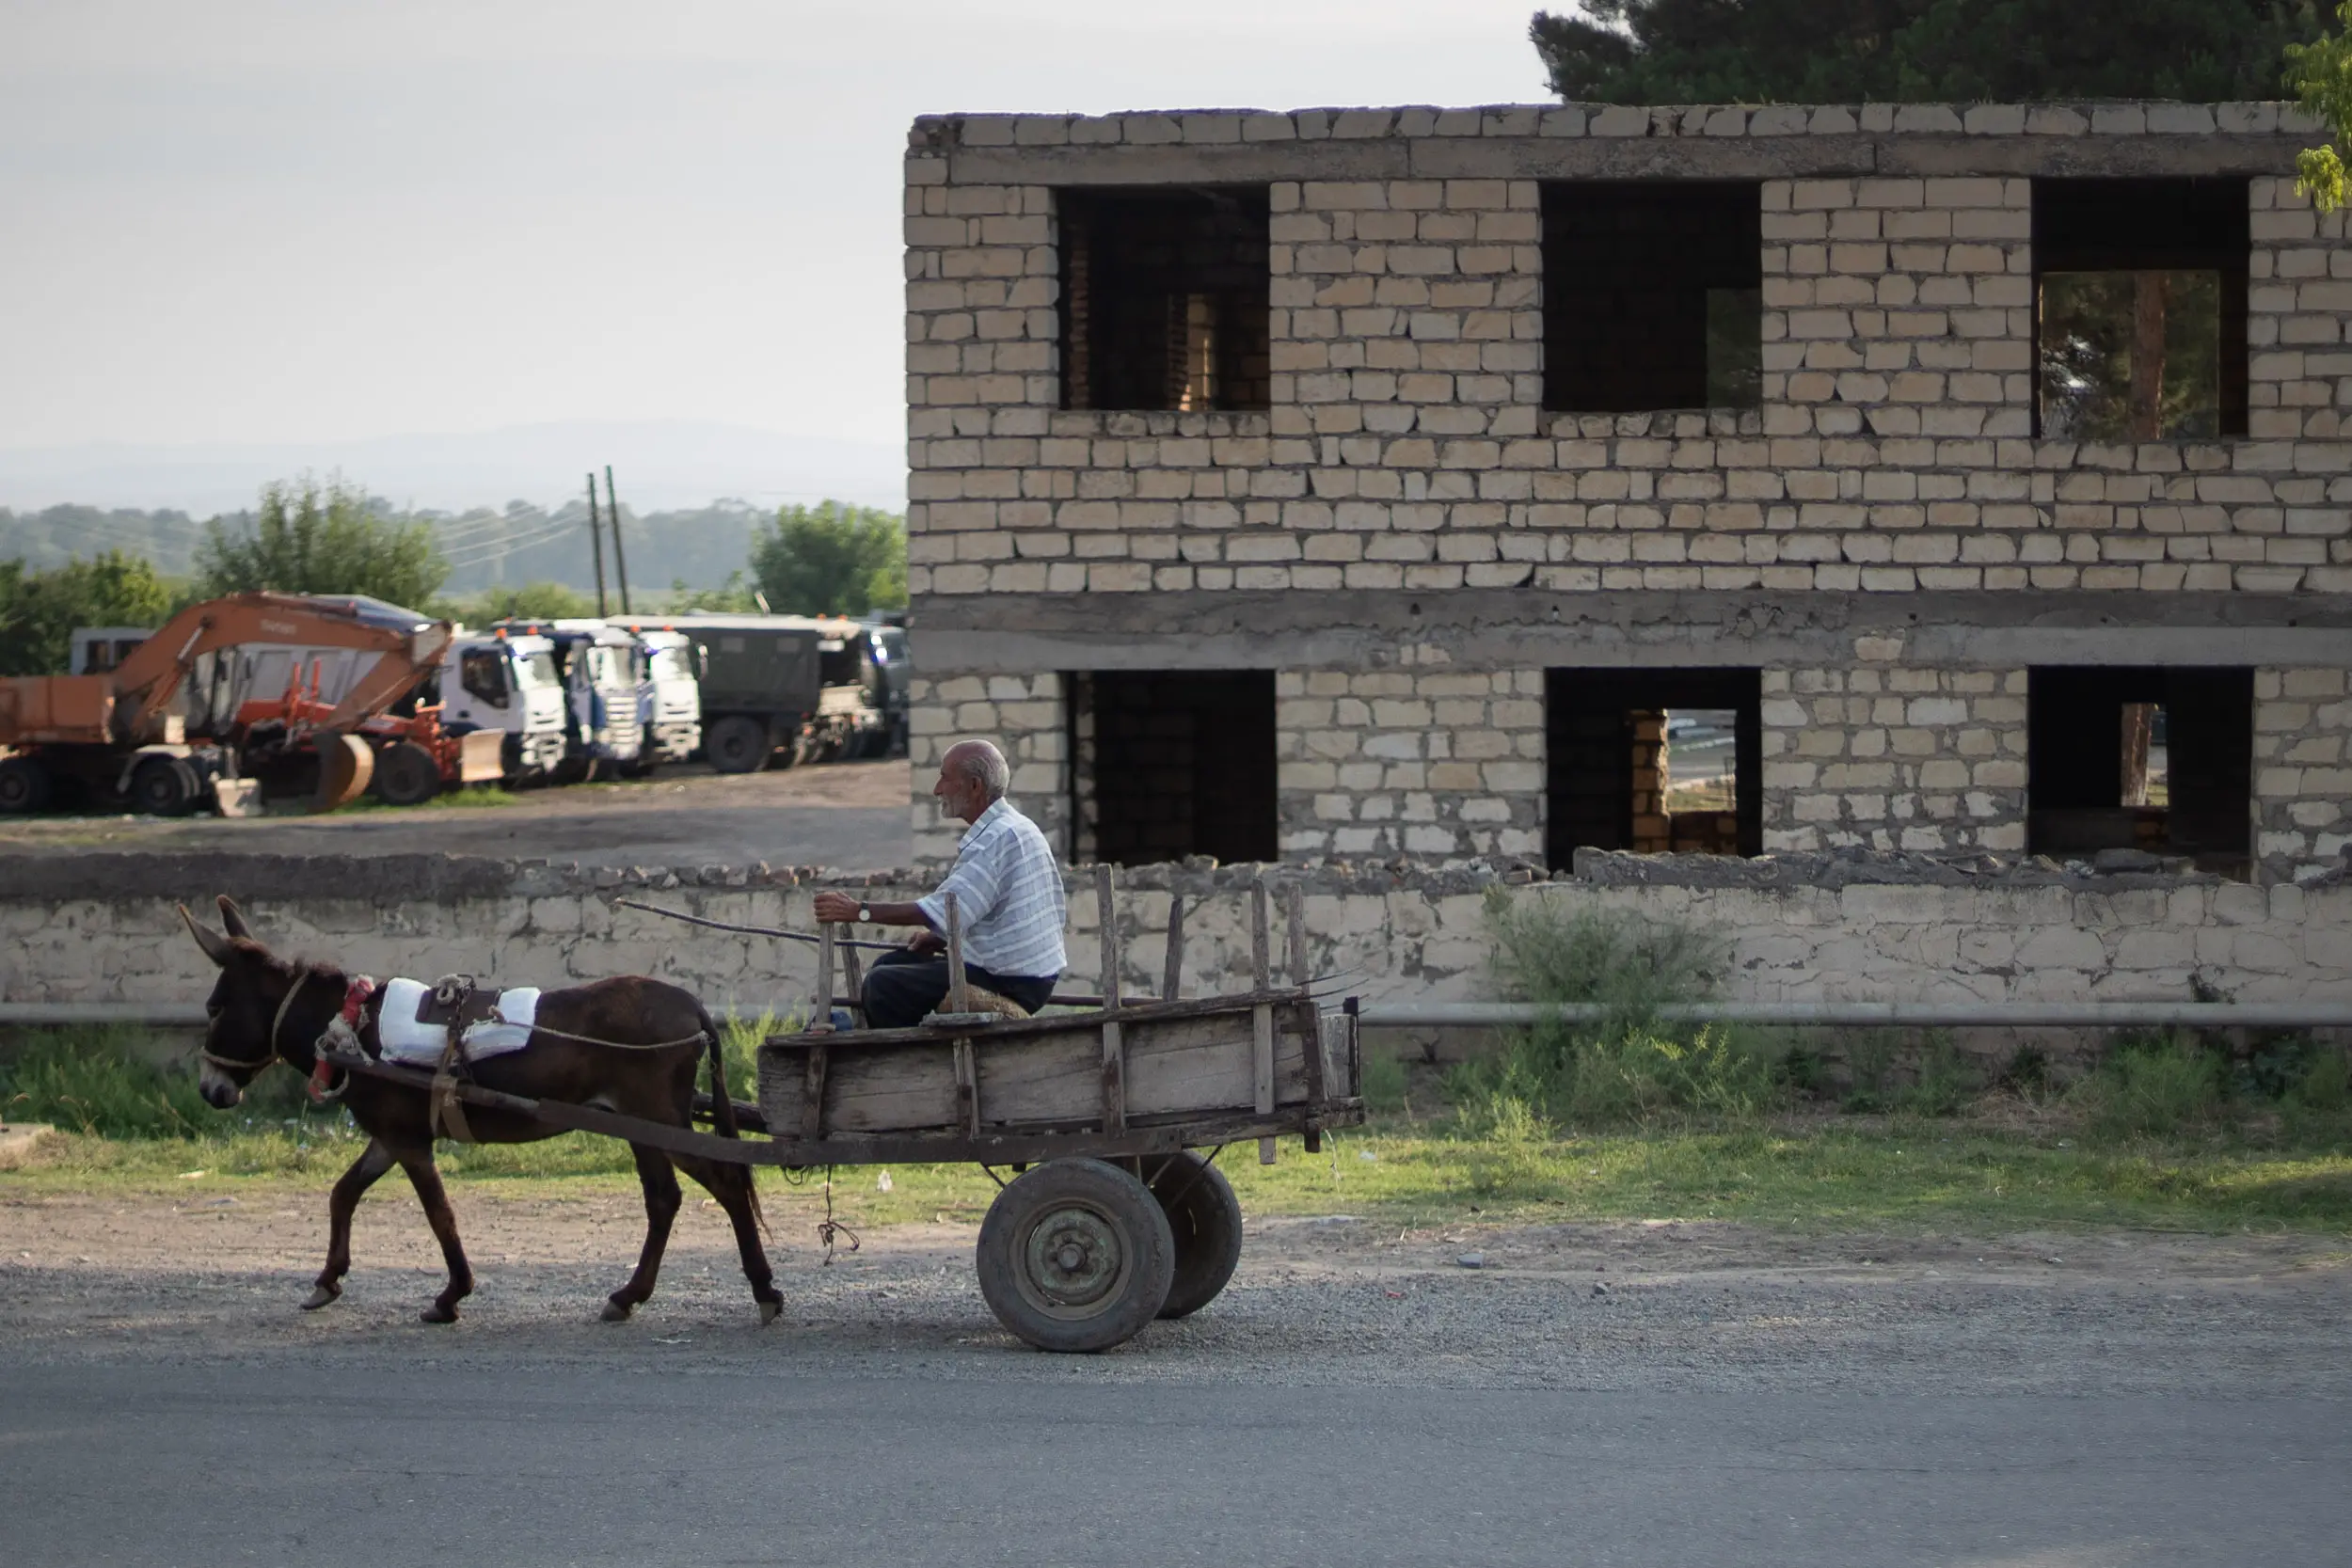 Azerbajian horse drawn cart